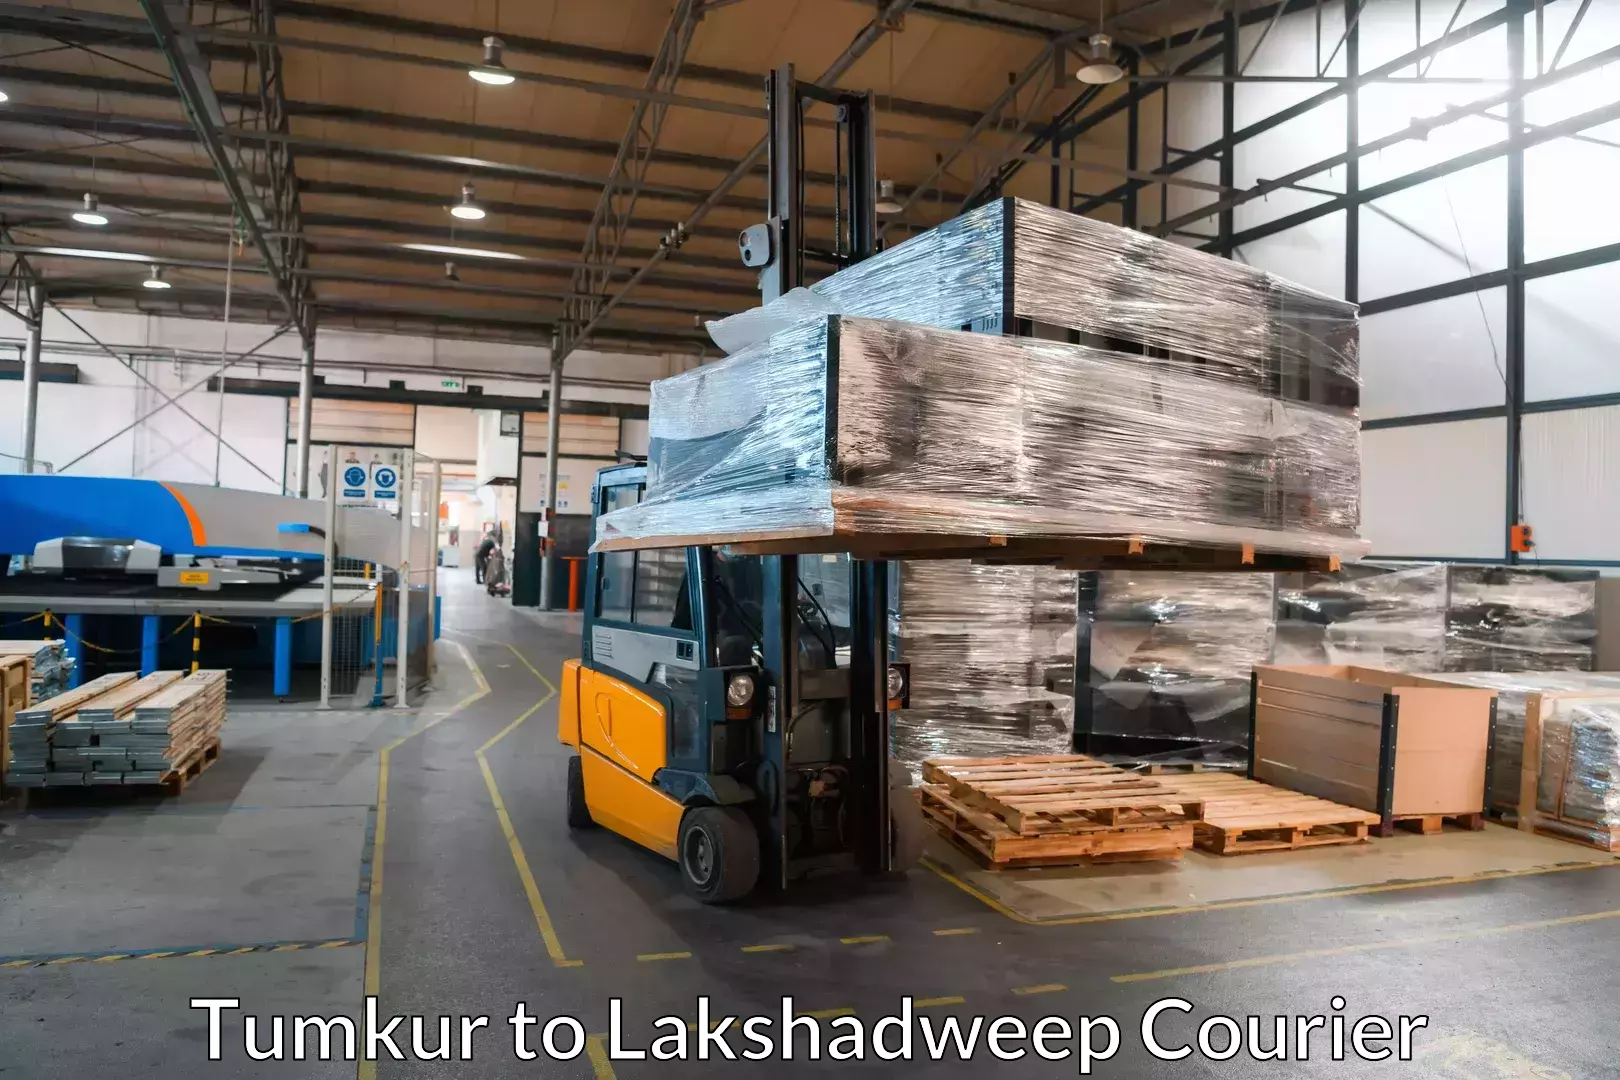 Furniture transport service Tumkur to Lakshadweep